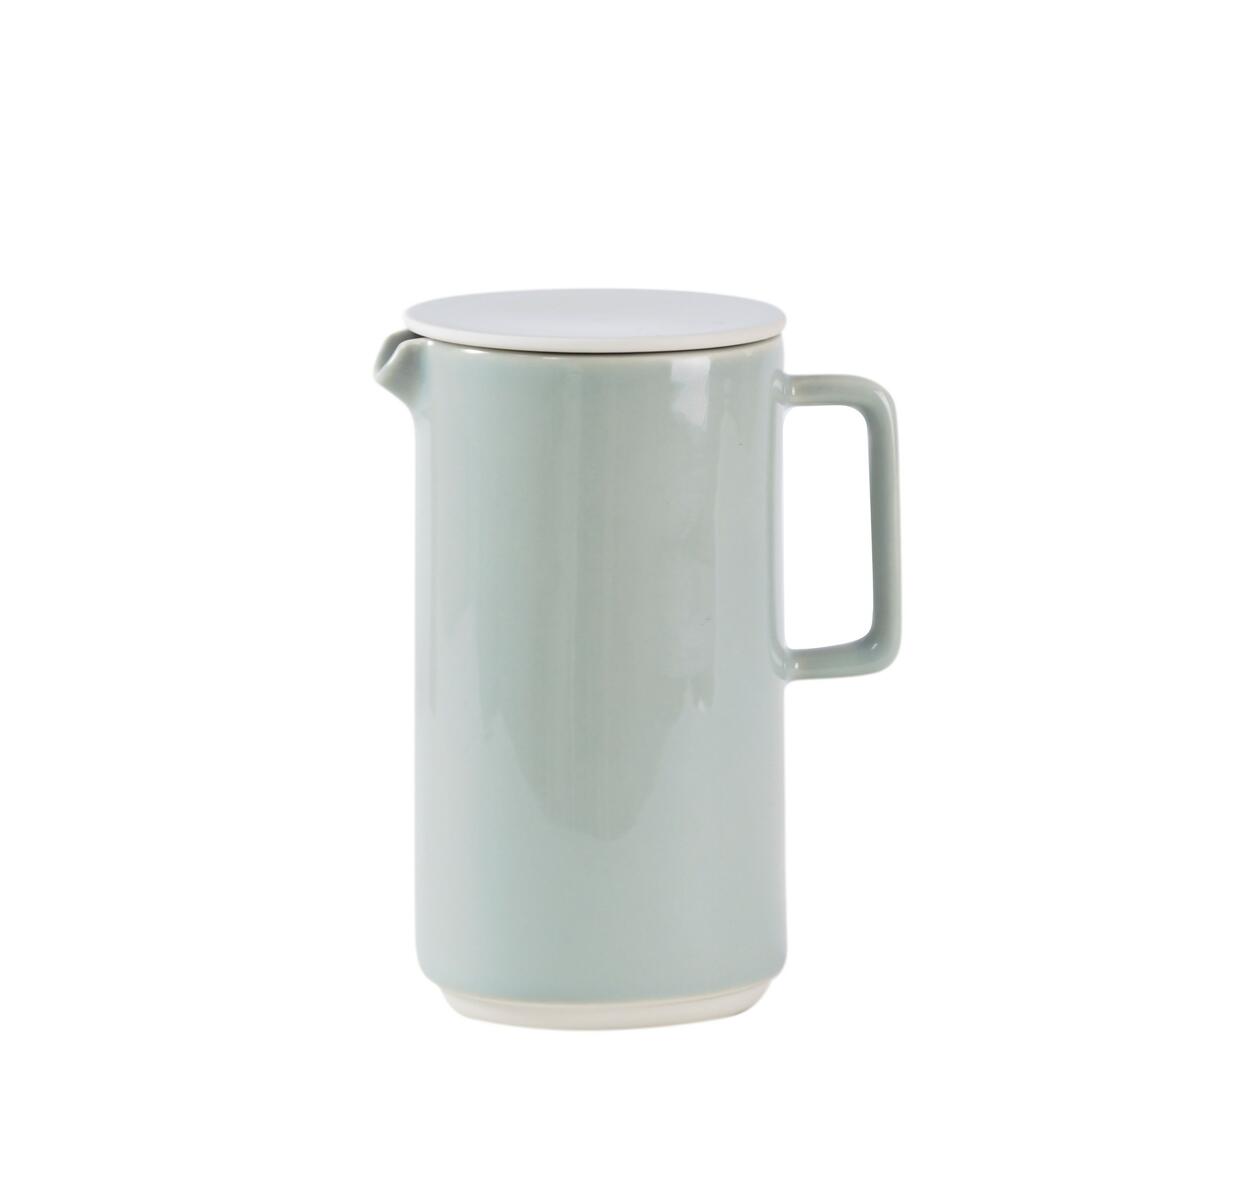 tea pot studio calque ceramic manufacturer